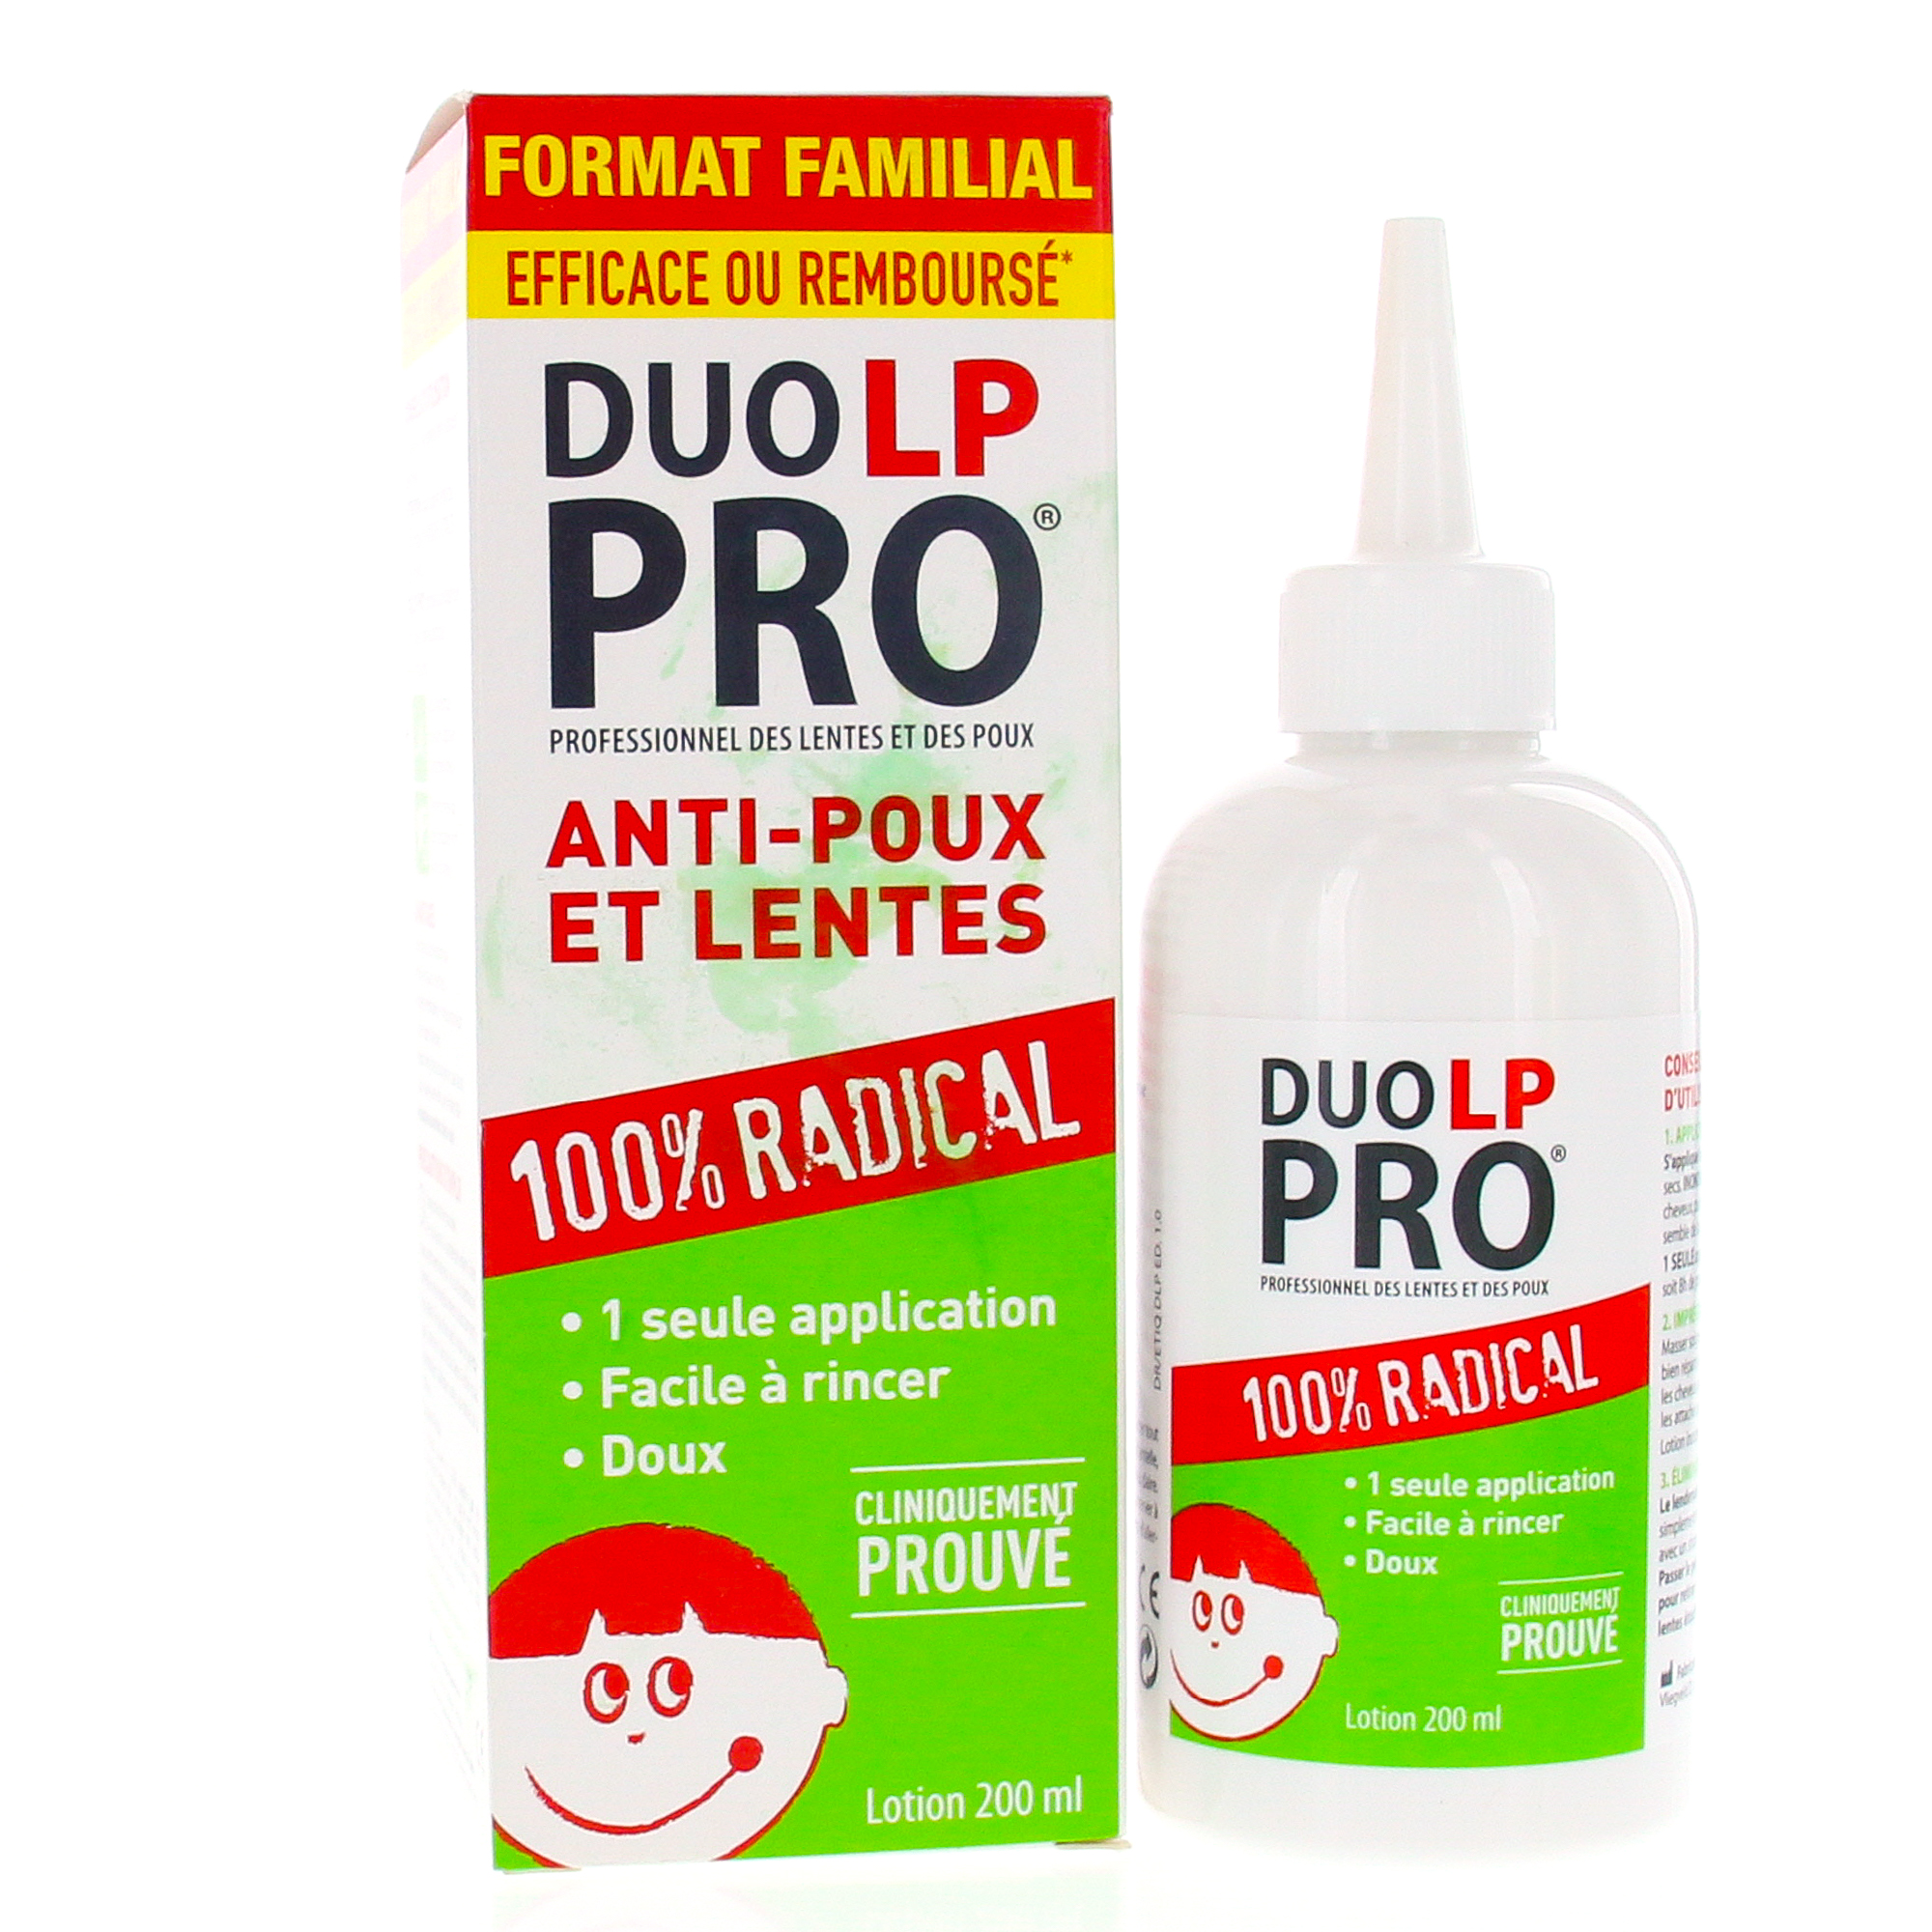 DUO LP PRO Anti-poux et lentes lotion 150ml